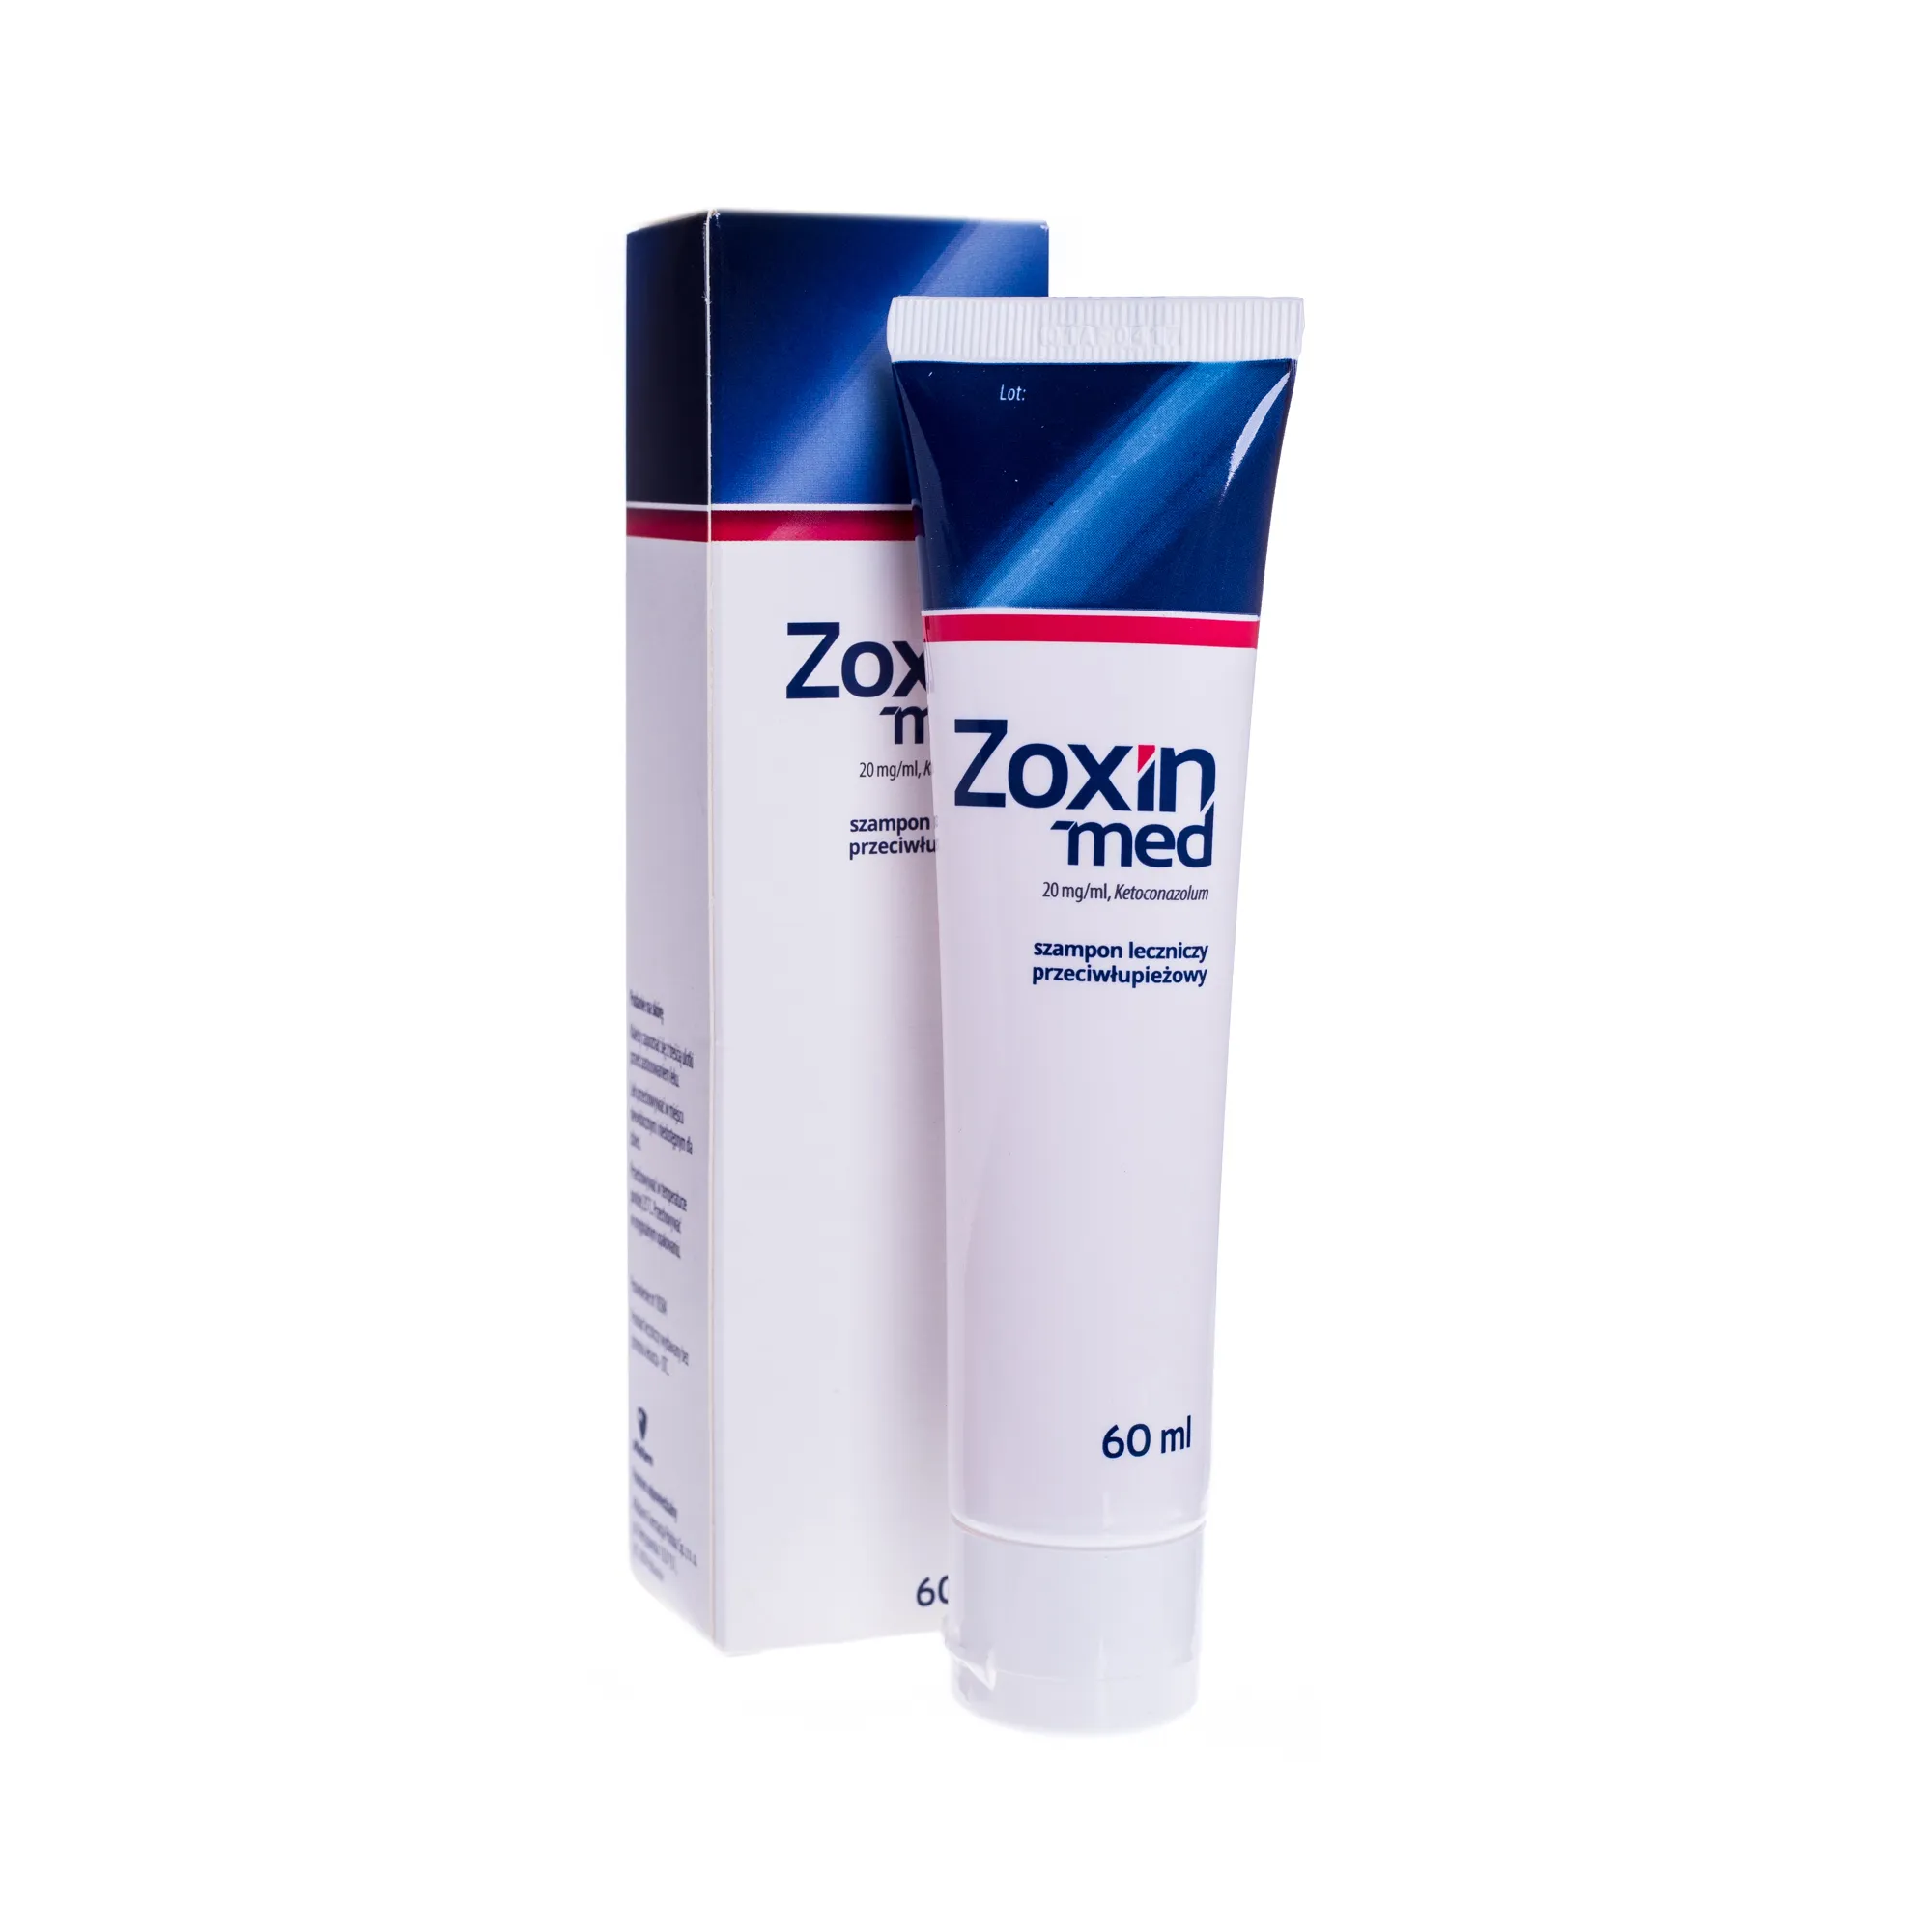 Zoxin-med, szampon leczniczy, 60 ml 